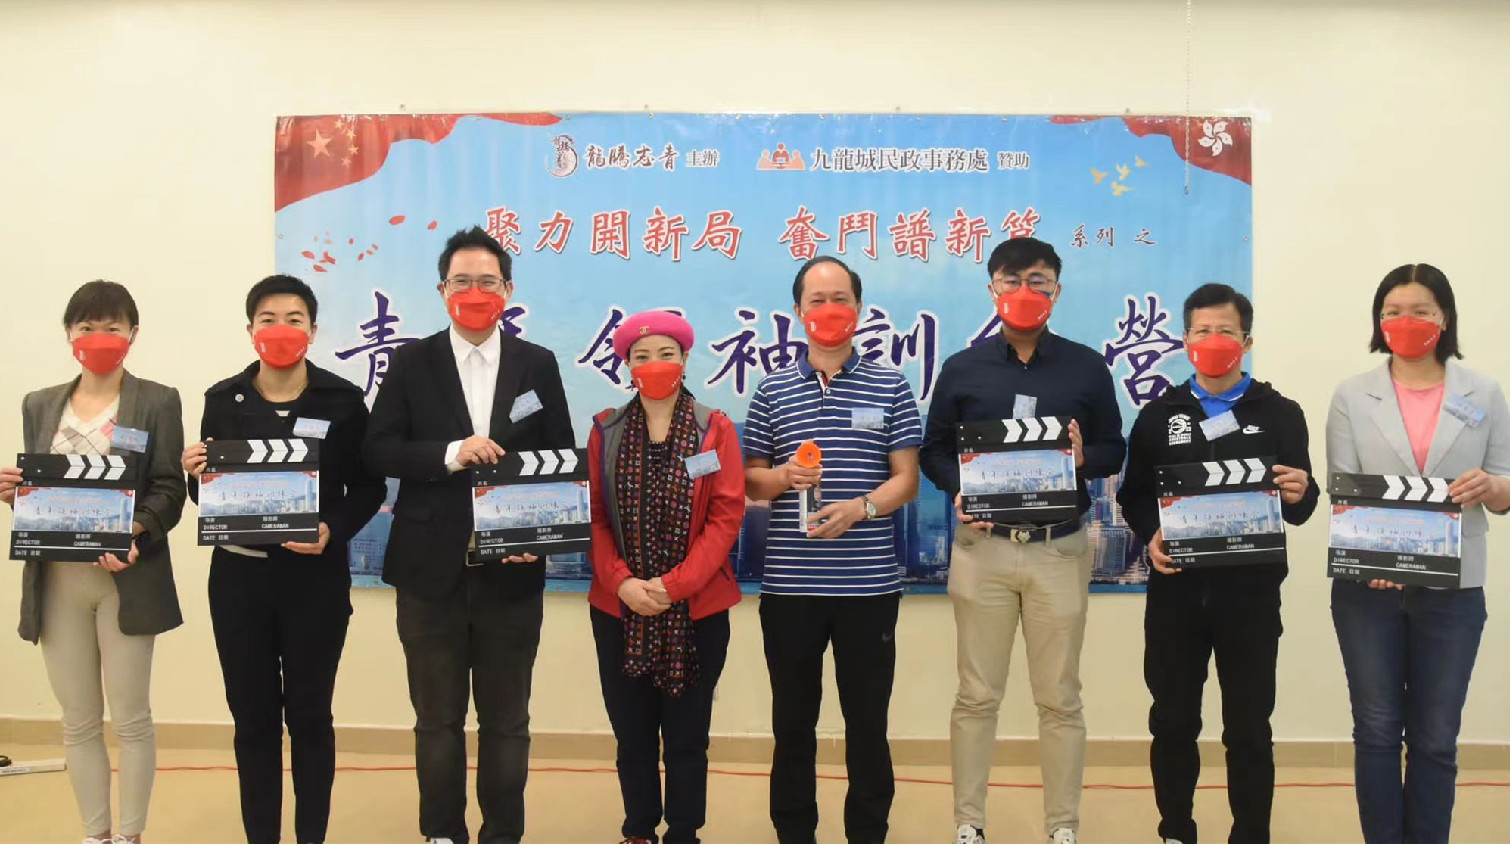 龍騰志青舉行「聚力開新局 奮鬥譜新篇」系列活動之青年領袖訓練營